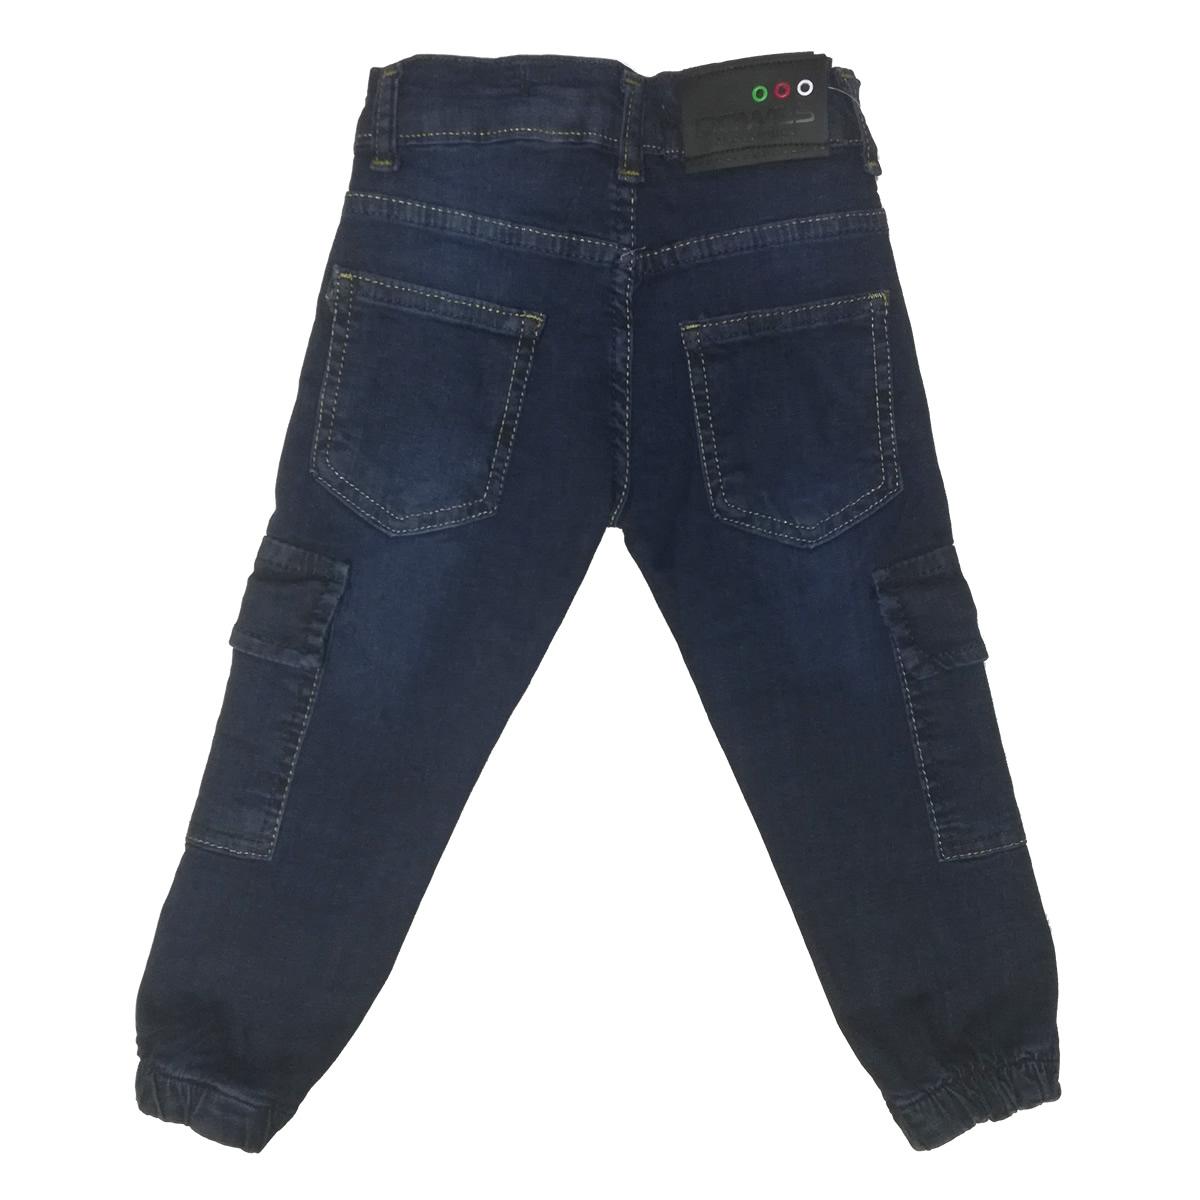 Дитячі джинси для хлопчика, сині (900-20), Dowes